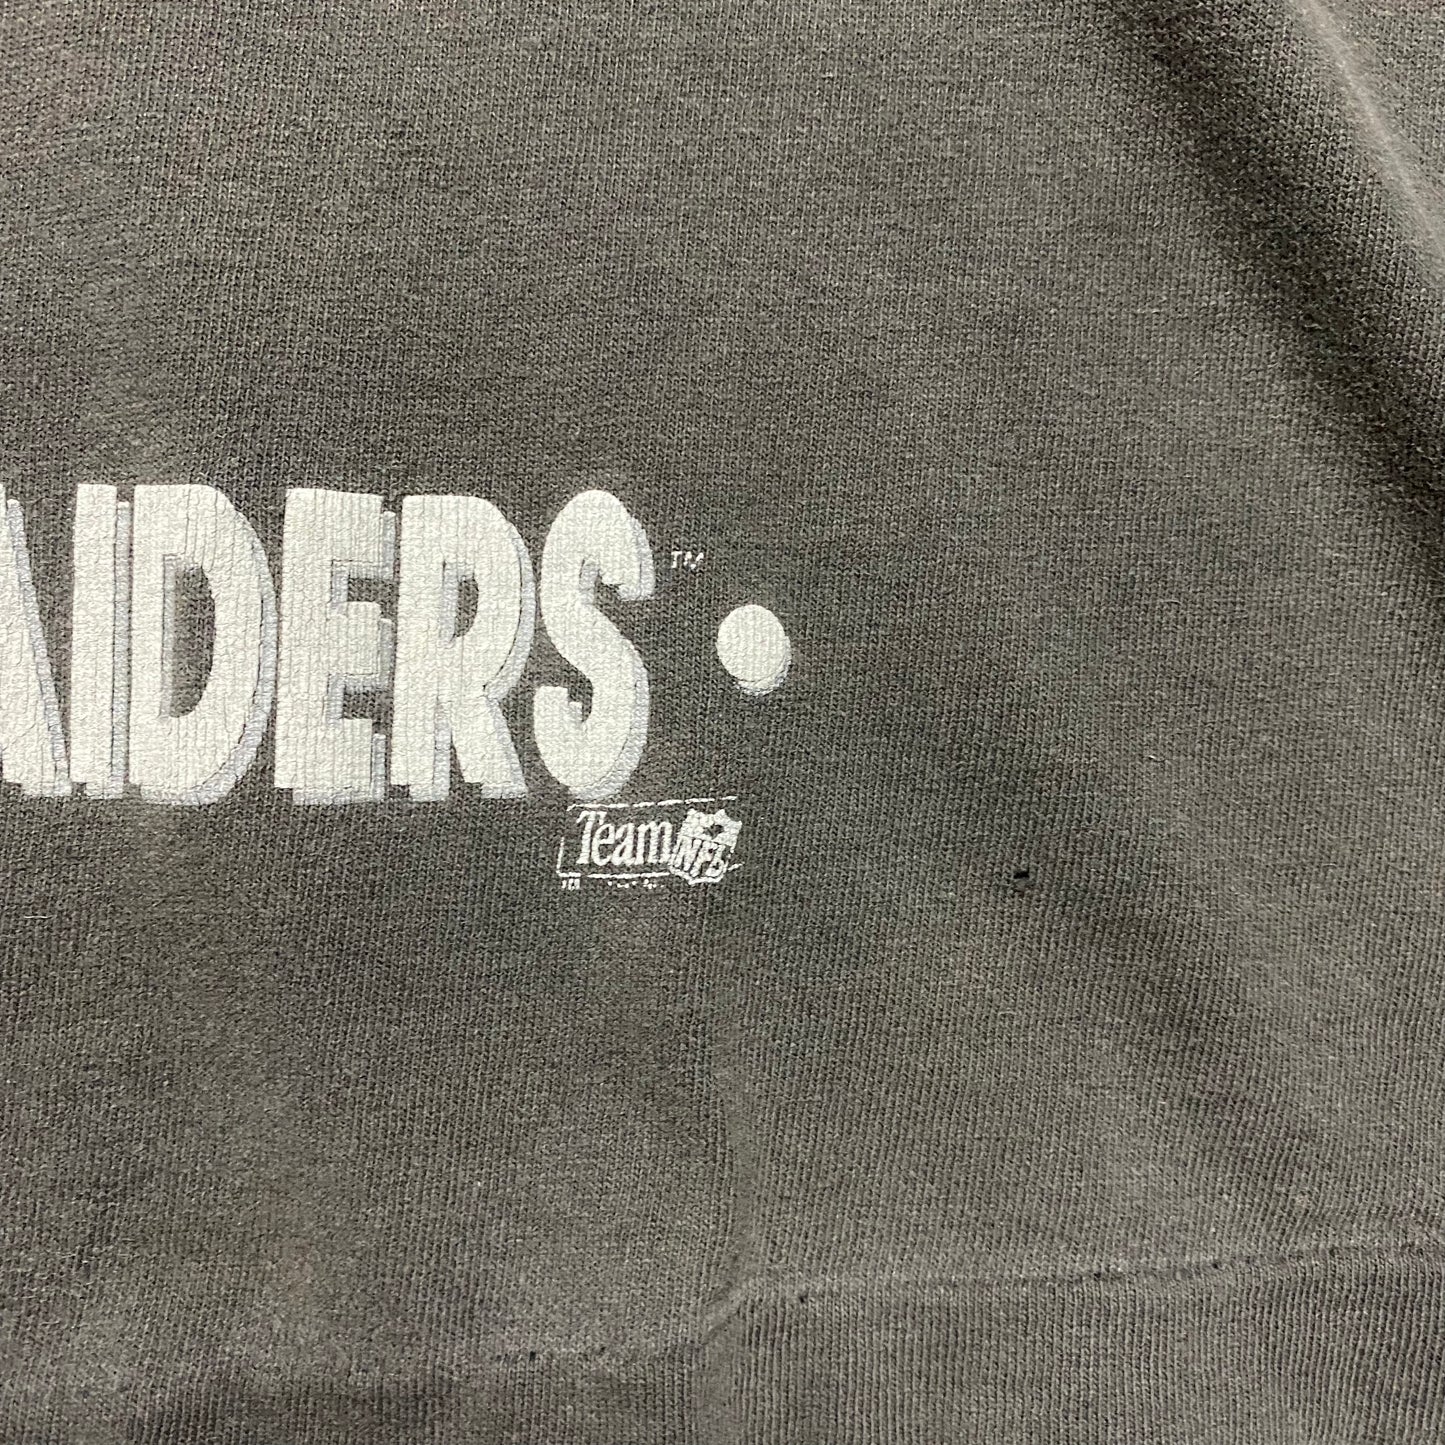 90's "LOS ANGELES RAIDERS" NFL T-SHIRT